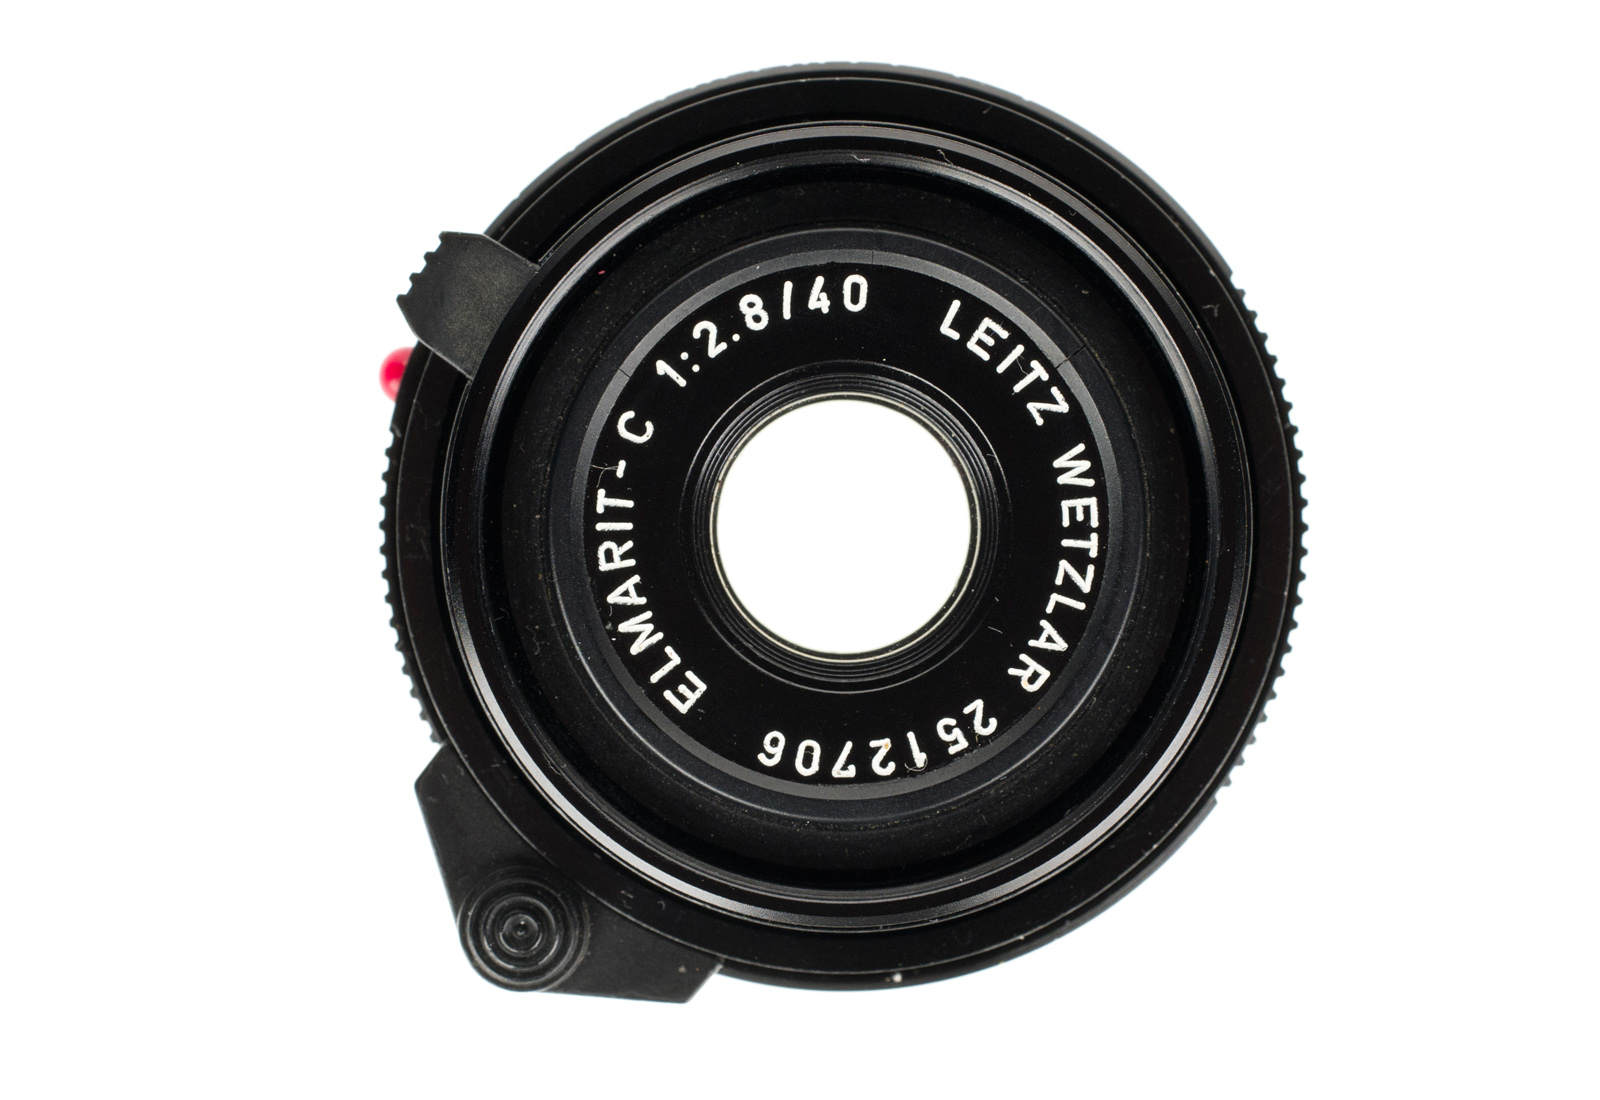 Leica Elmarit-C 1:2,8/40mm, black